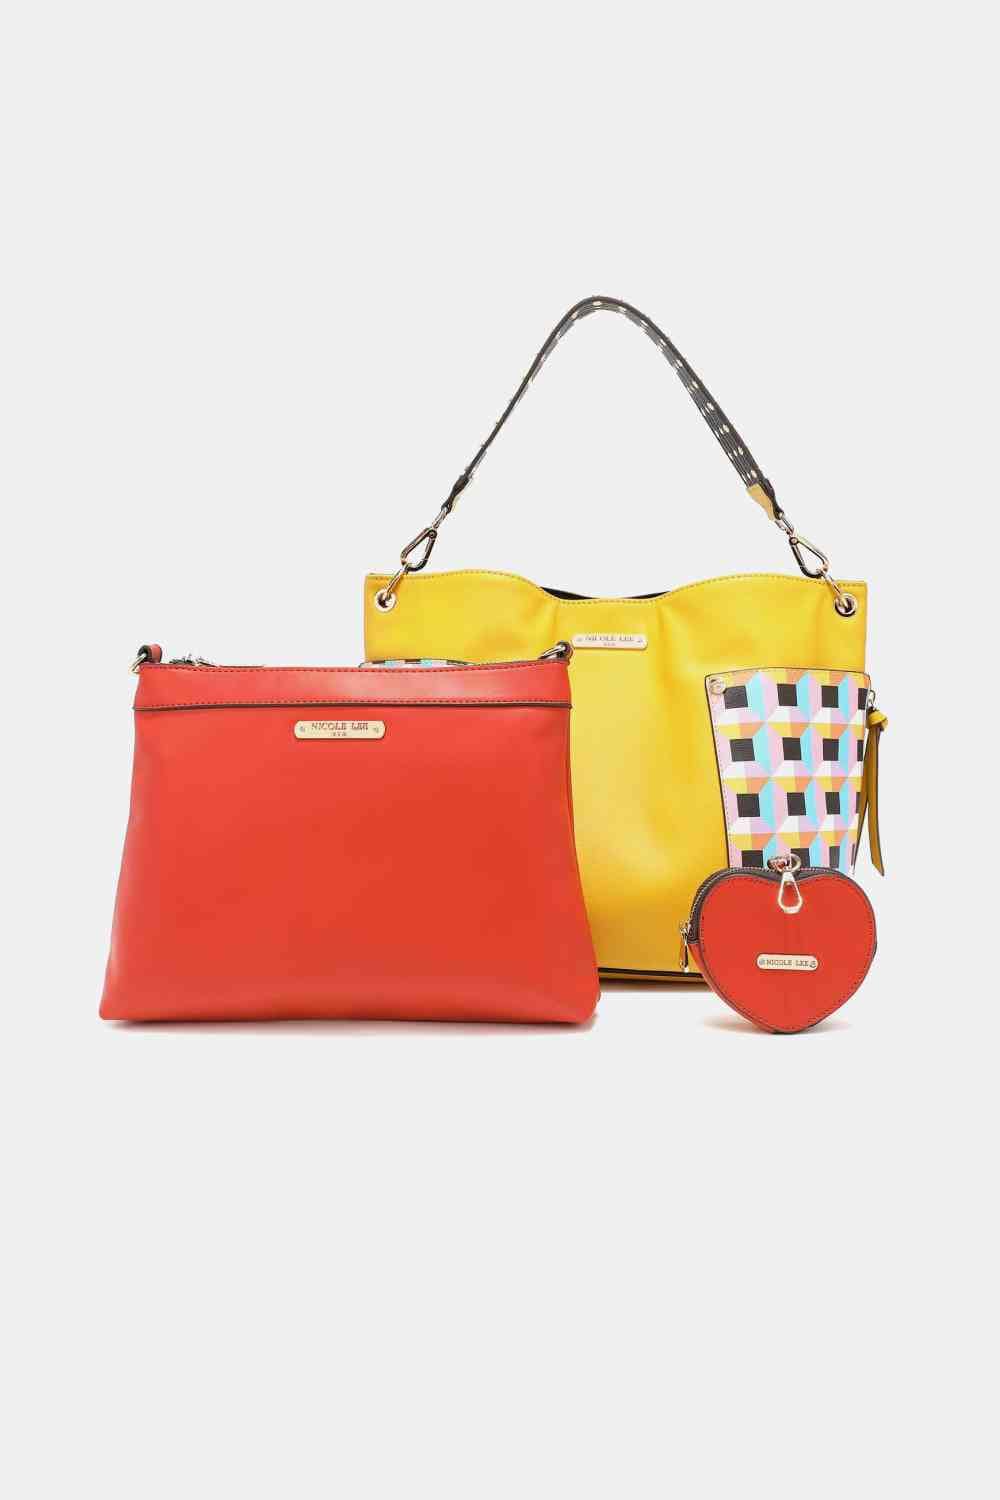 The802Gypsy Handbags, Wallets & Cases Mustard / One Size GYPSY-Nicole Lee USA-3-Piece Handbag Set